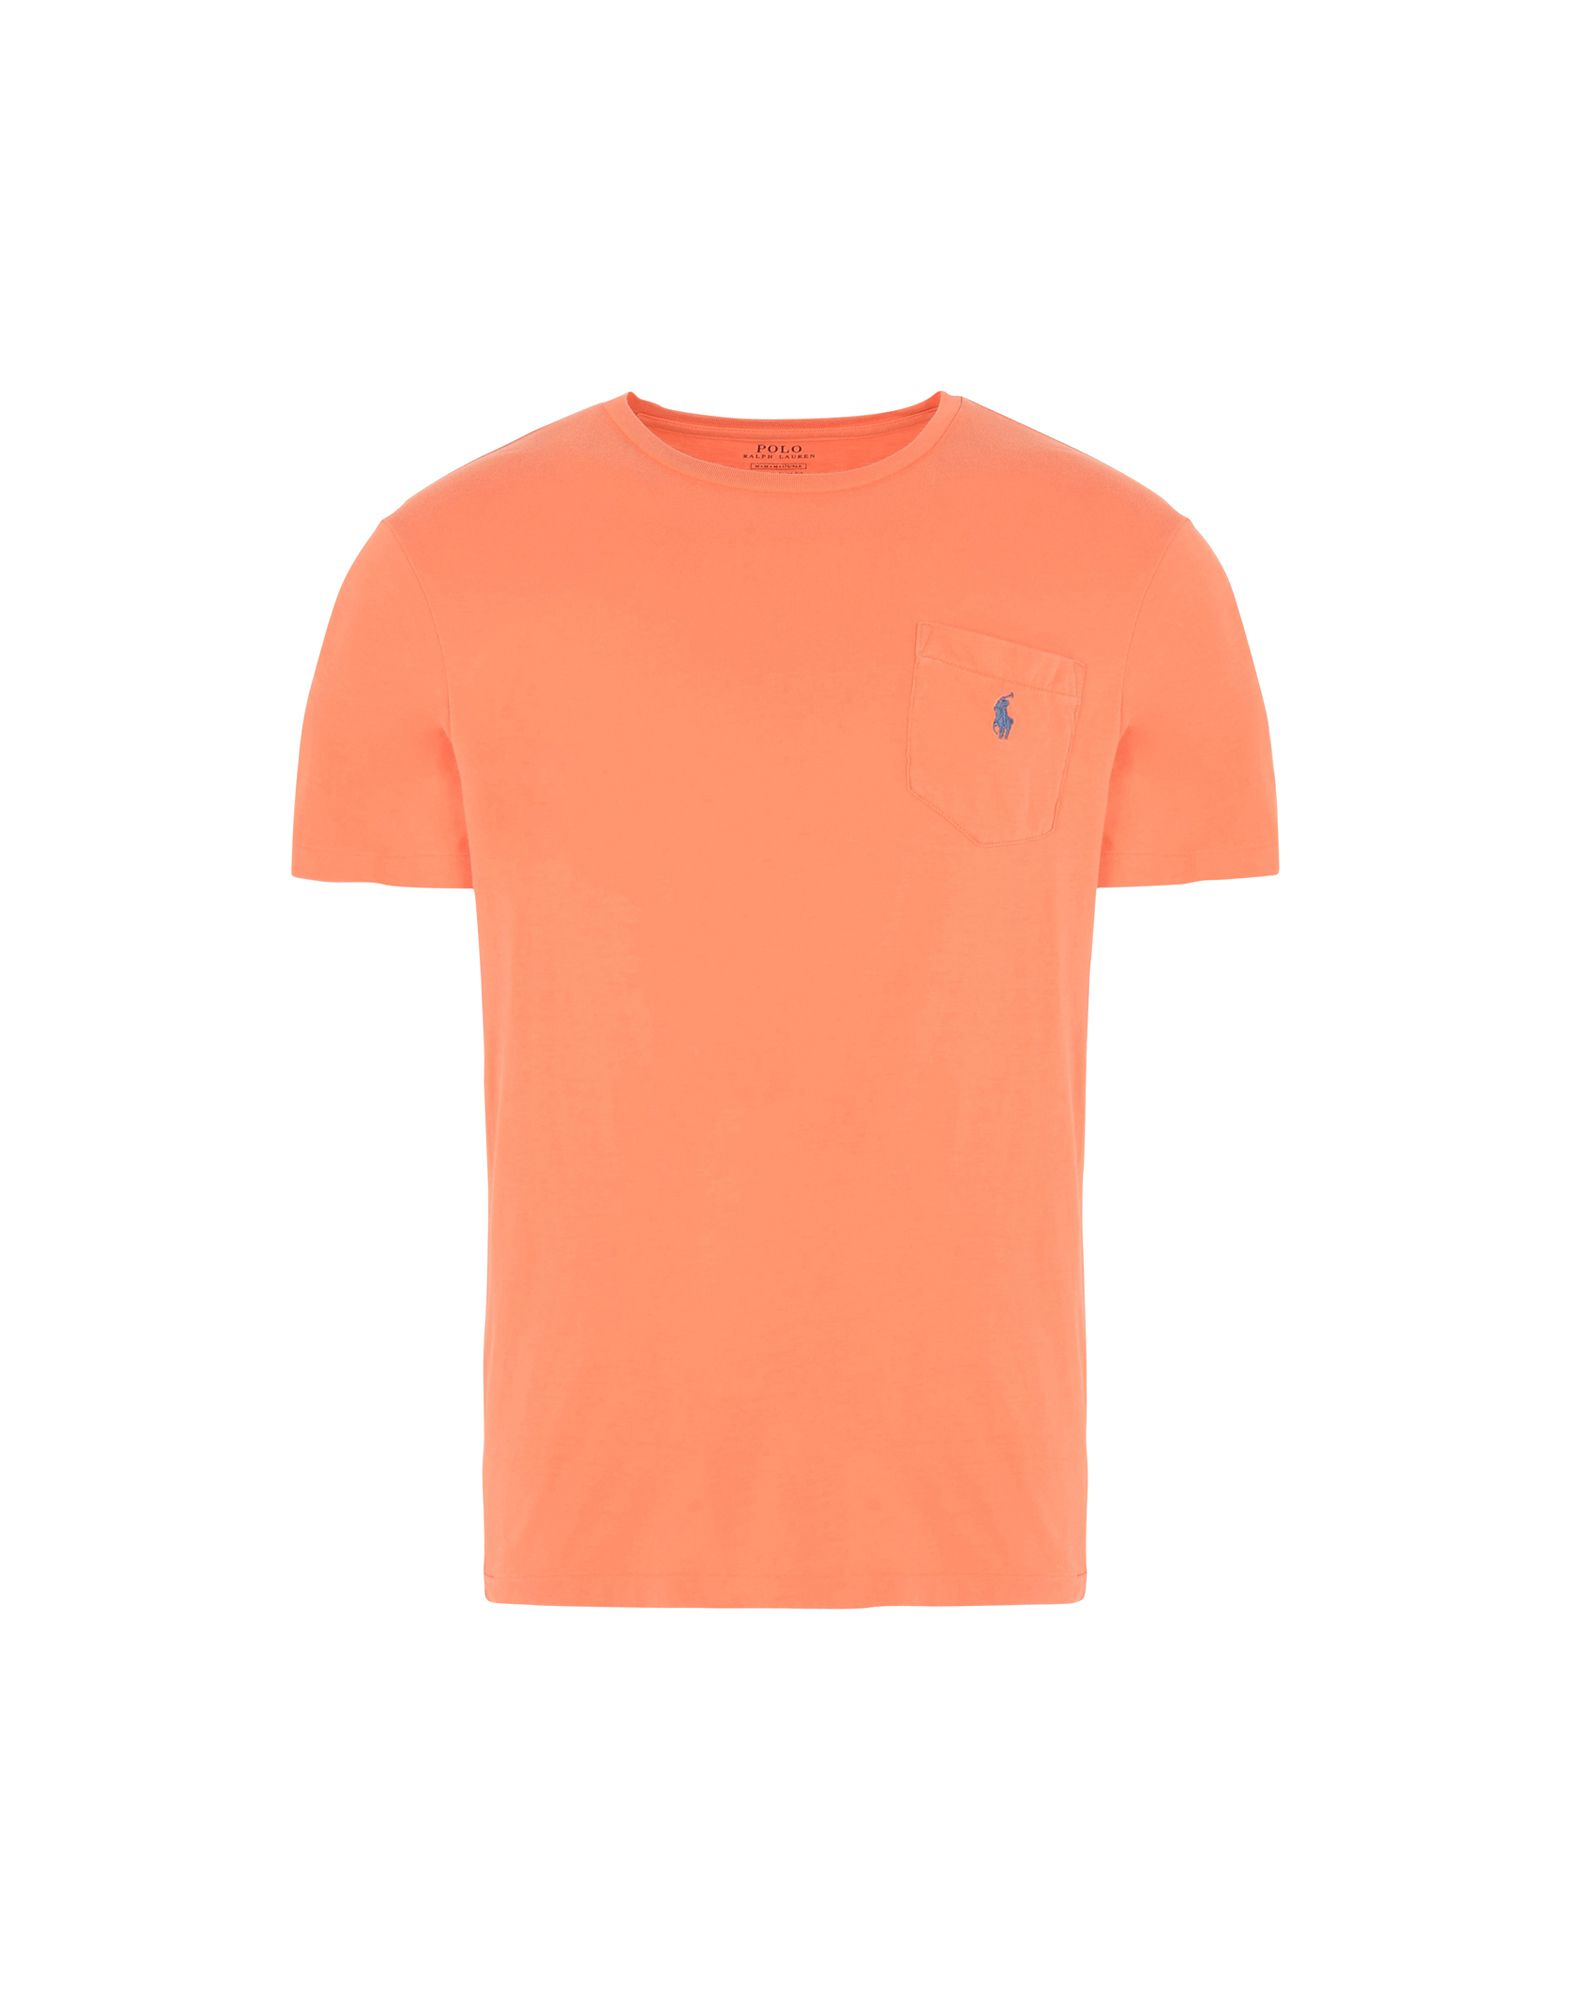 《送料無料》POLO RALPH LAUREN メンズ T シャツ オレンジ S コットン 100% Custom Fit T shirt